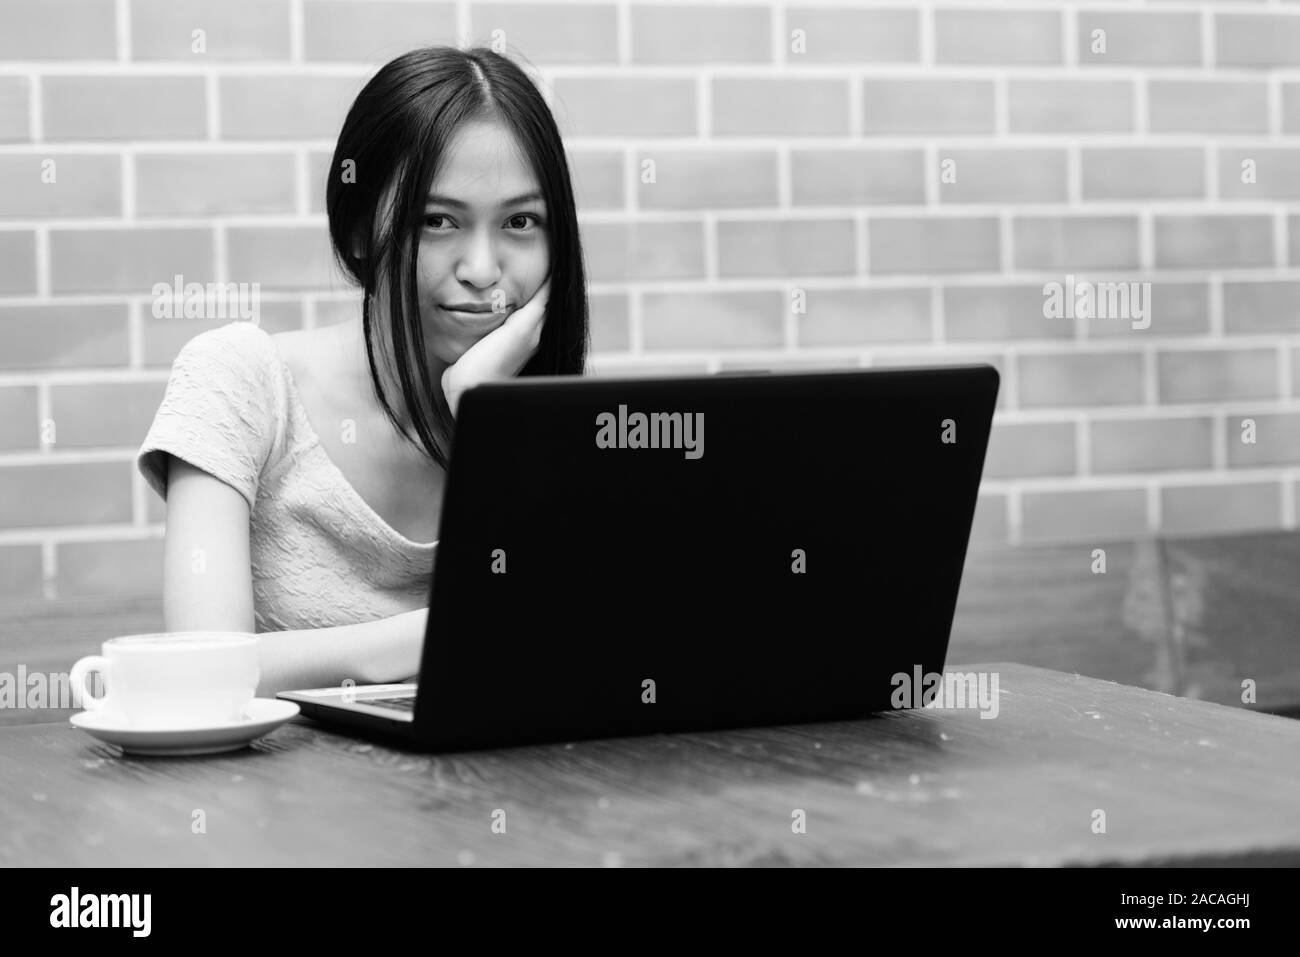 Giovane bella asiatica ragazza adolescente in appoggio il mento sulla mano con laptop e cappuccino sul tavolo di legno contro un muro di mattoni Foto Stock